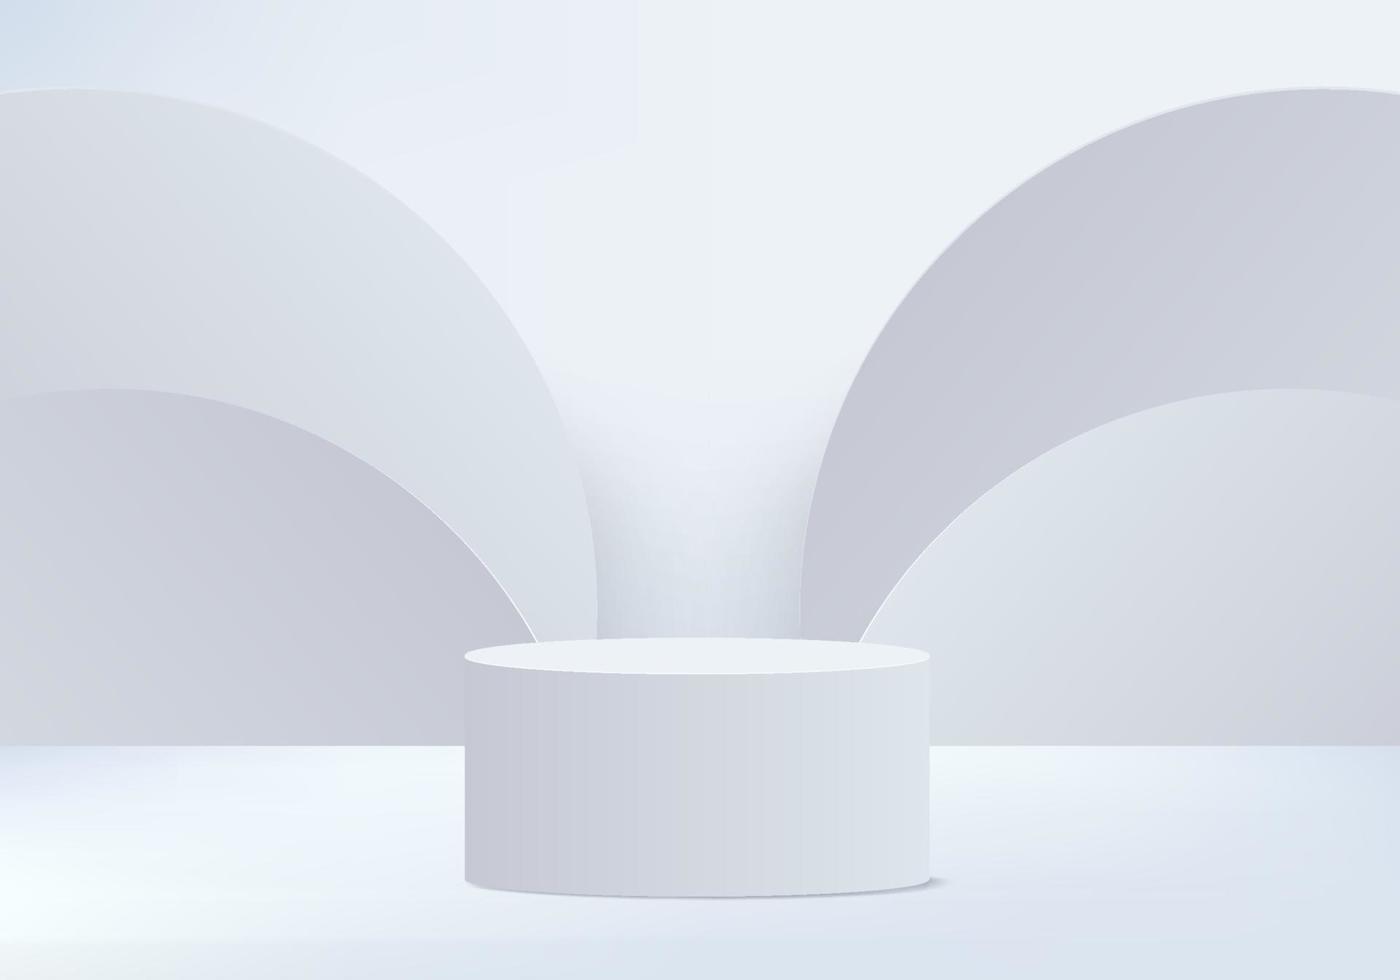 3D-Hintergrundprodukte zeigen Podiumszene mit geometrischem Plattformhintergrundvektor-3D-Rendering mit Podestständer an, um kosmetische Produkte Bühnenschaufenster auf Sockelanzeige weißem Studio zu zeigen vektor